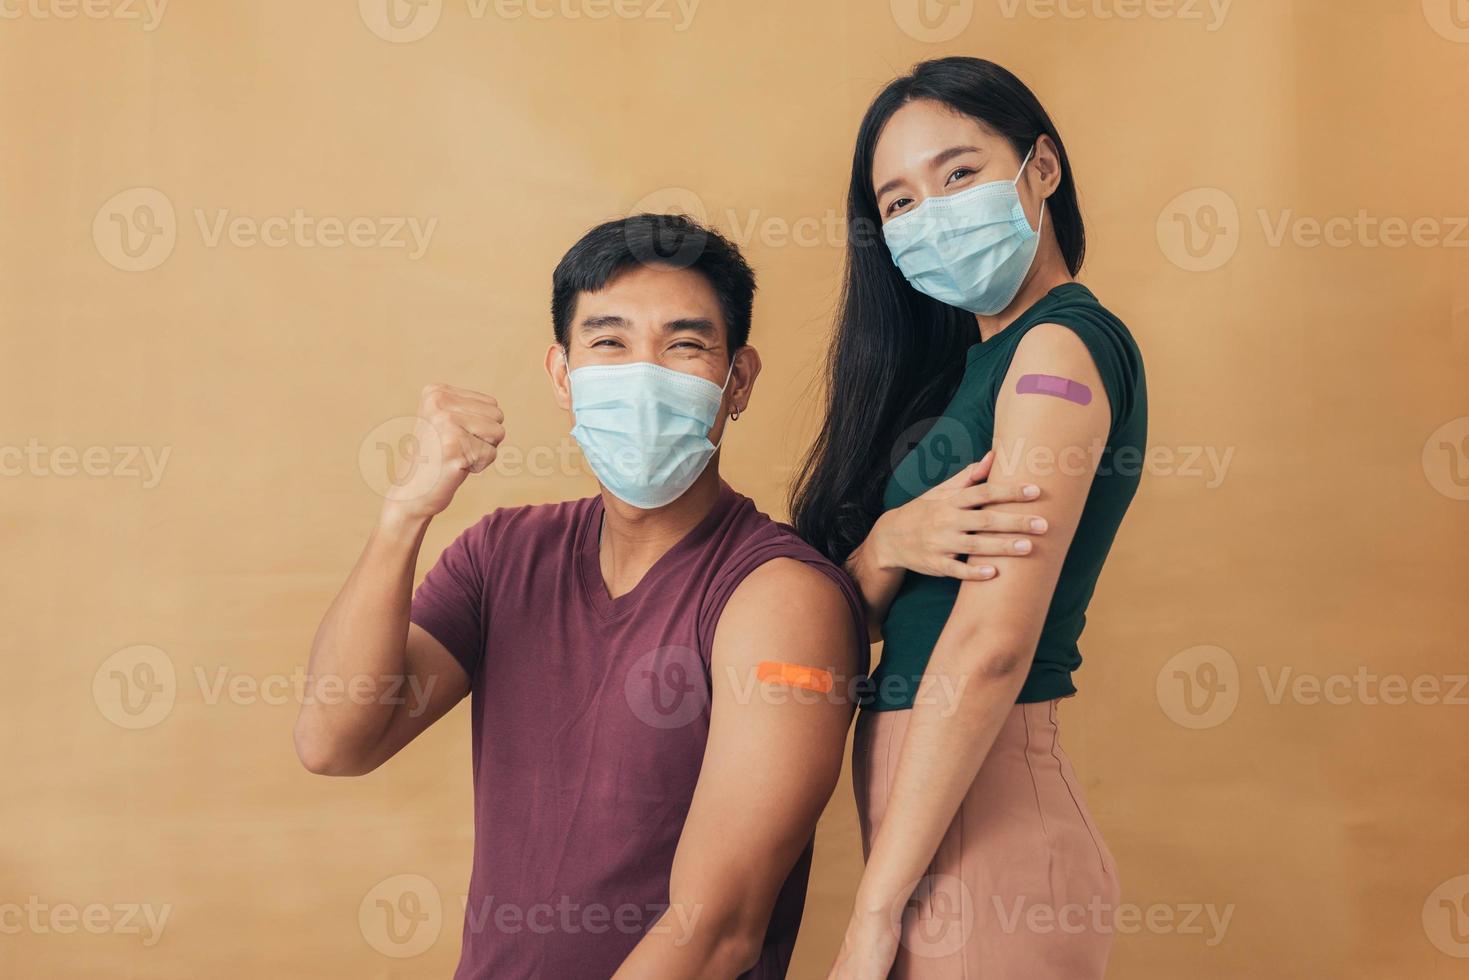 homme et femme asiatiques montrant les épaules après avoir reçu un vaccin. couple heureux montrant le bras avec des pansements après l'injection du vaccin. photo